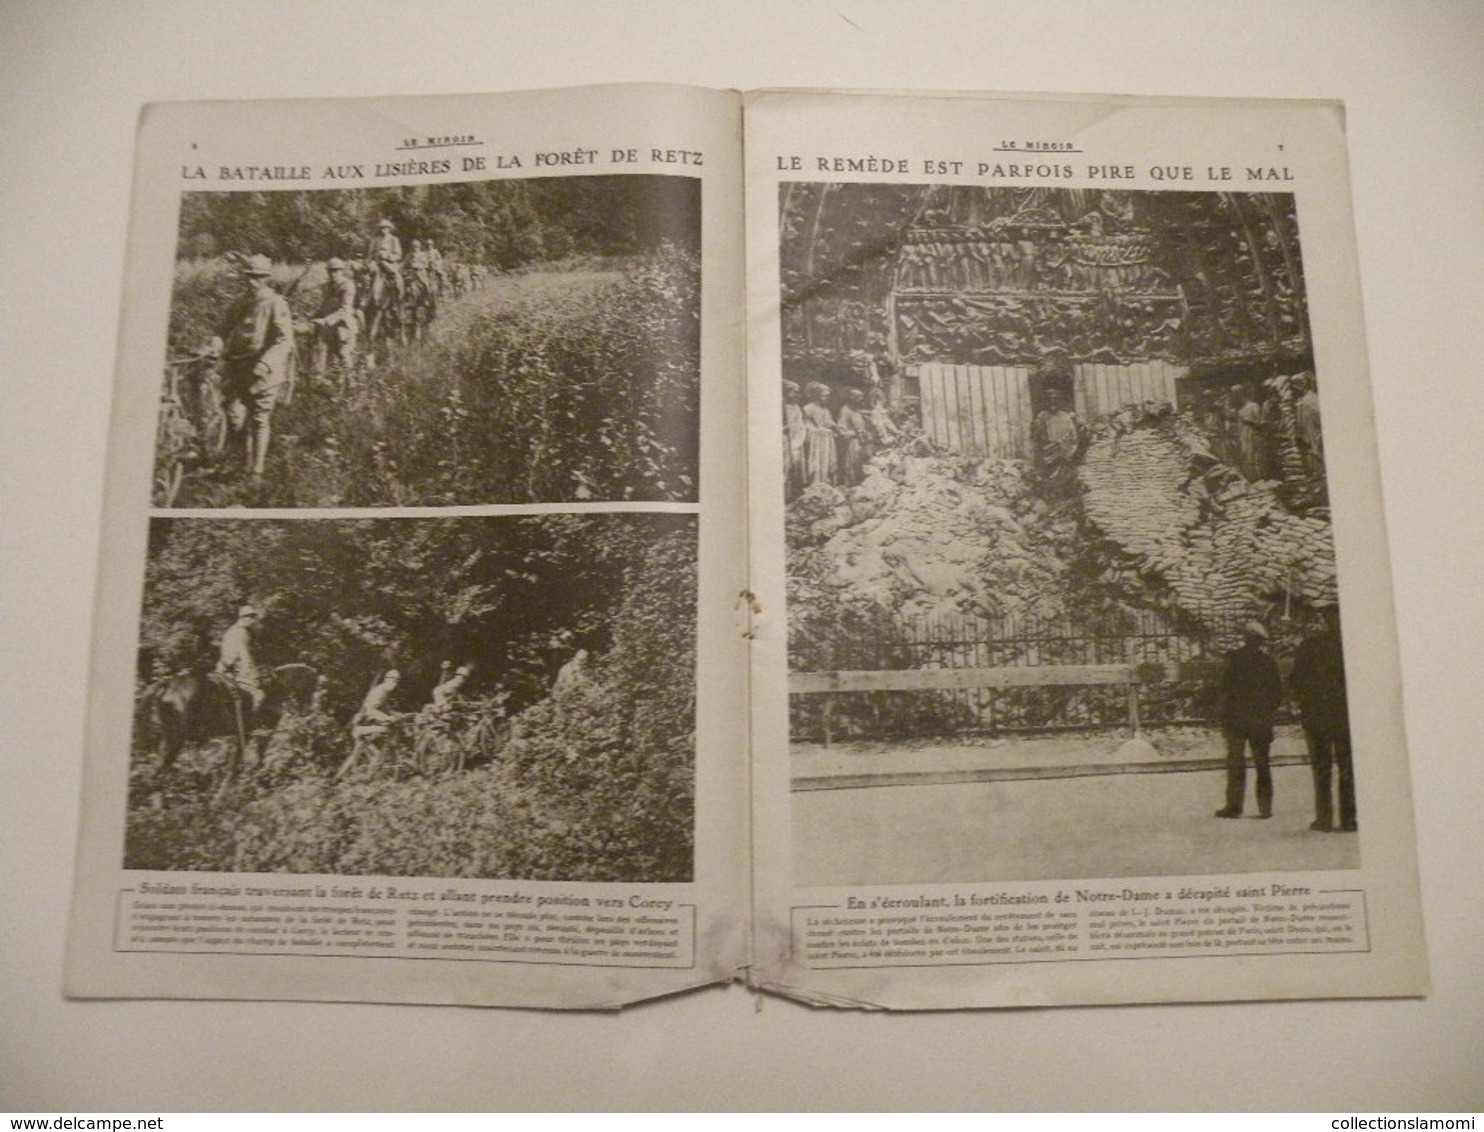 Le Miroir,la Guerre 1914-1918 - Journal N°238 - 16.6.1918 - Carte,opérations De L'Oise à La Marne,secteur Soissons-Reims - War 1914-18